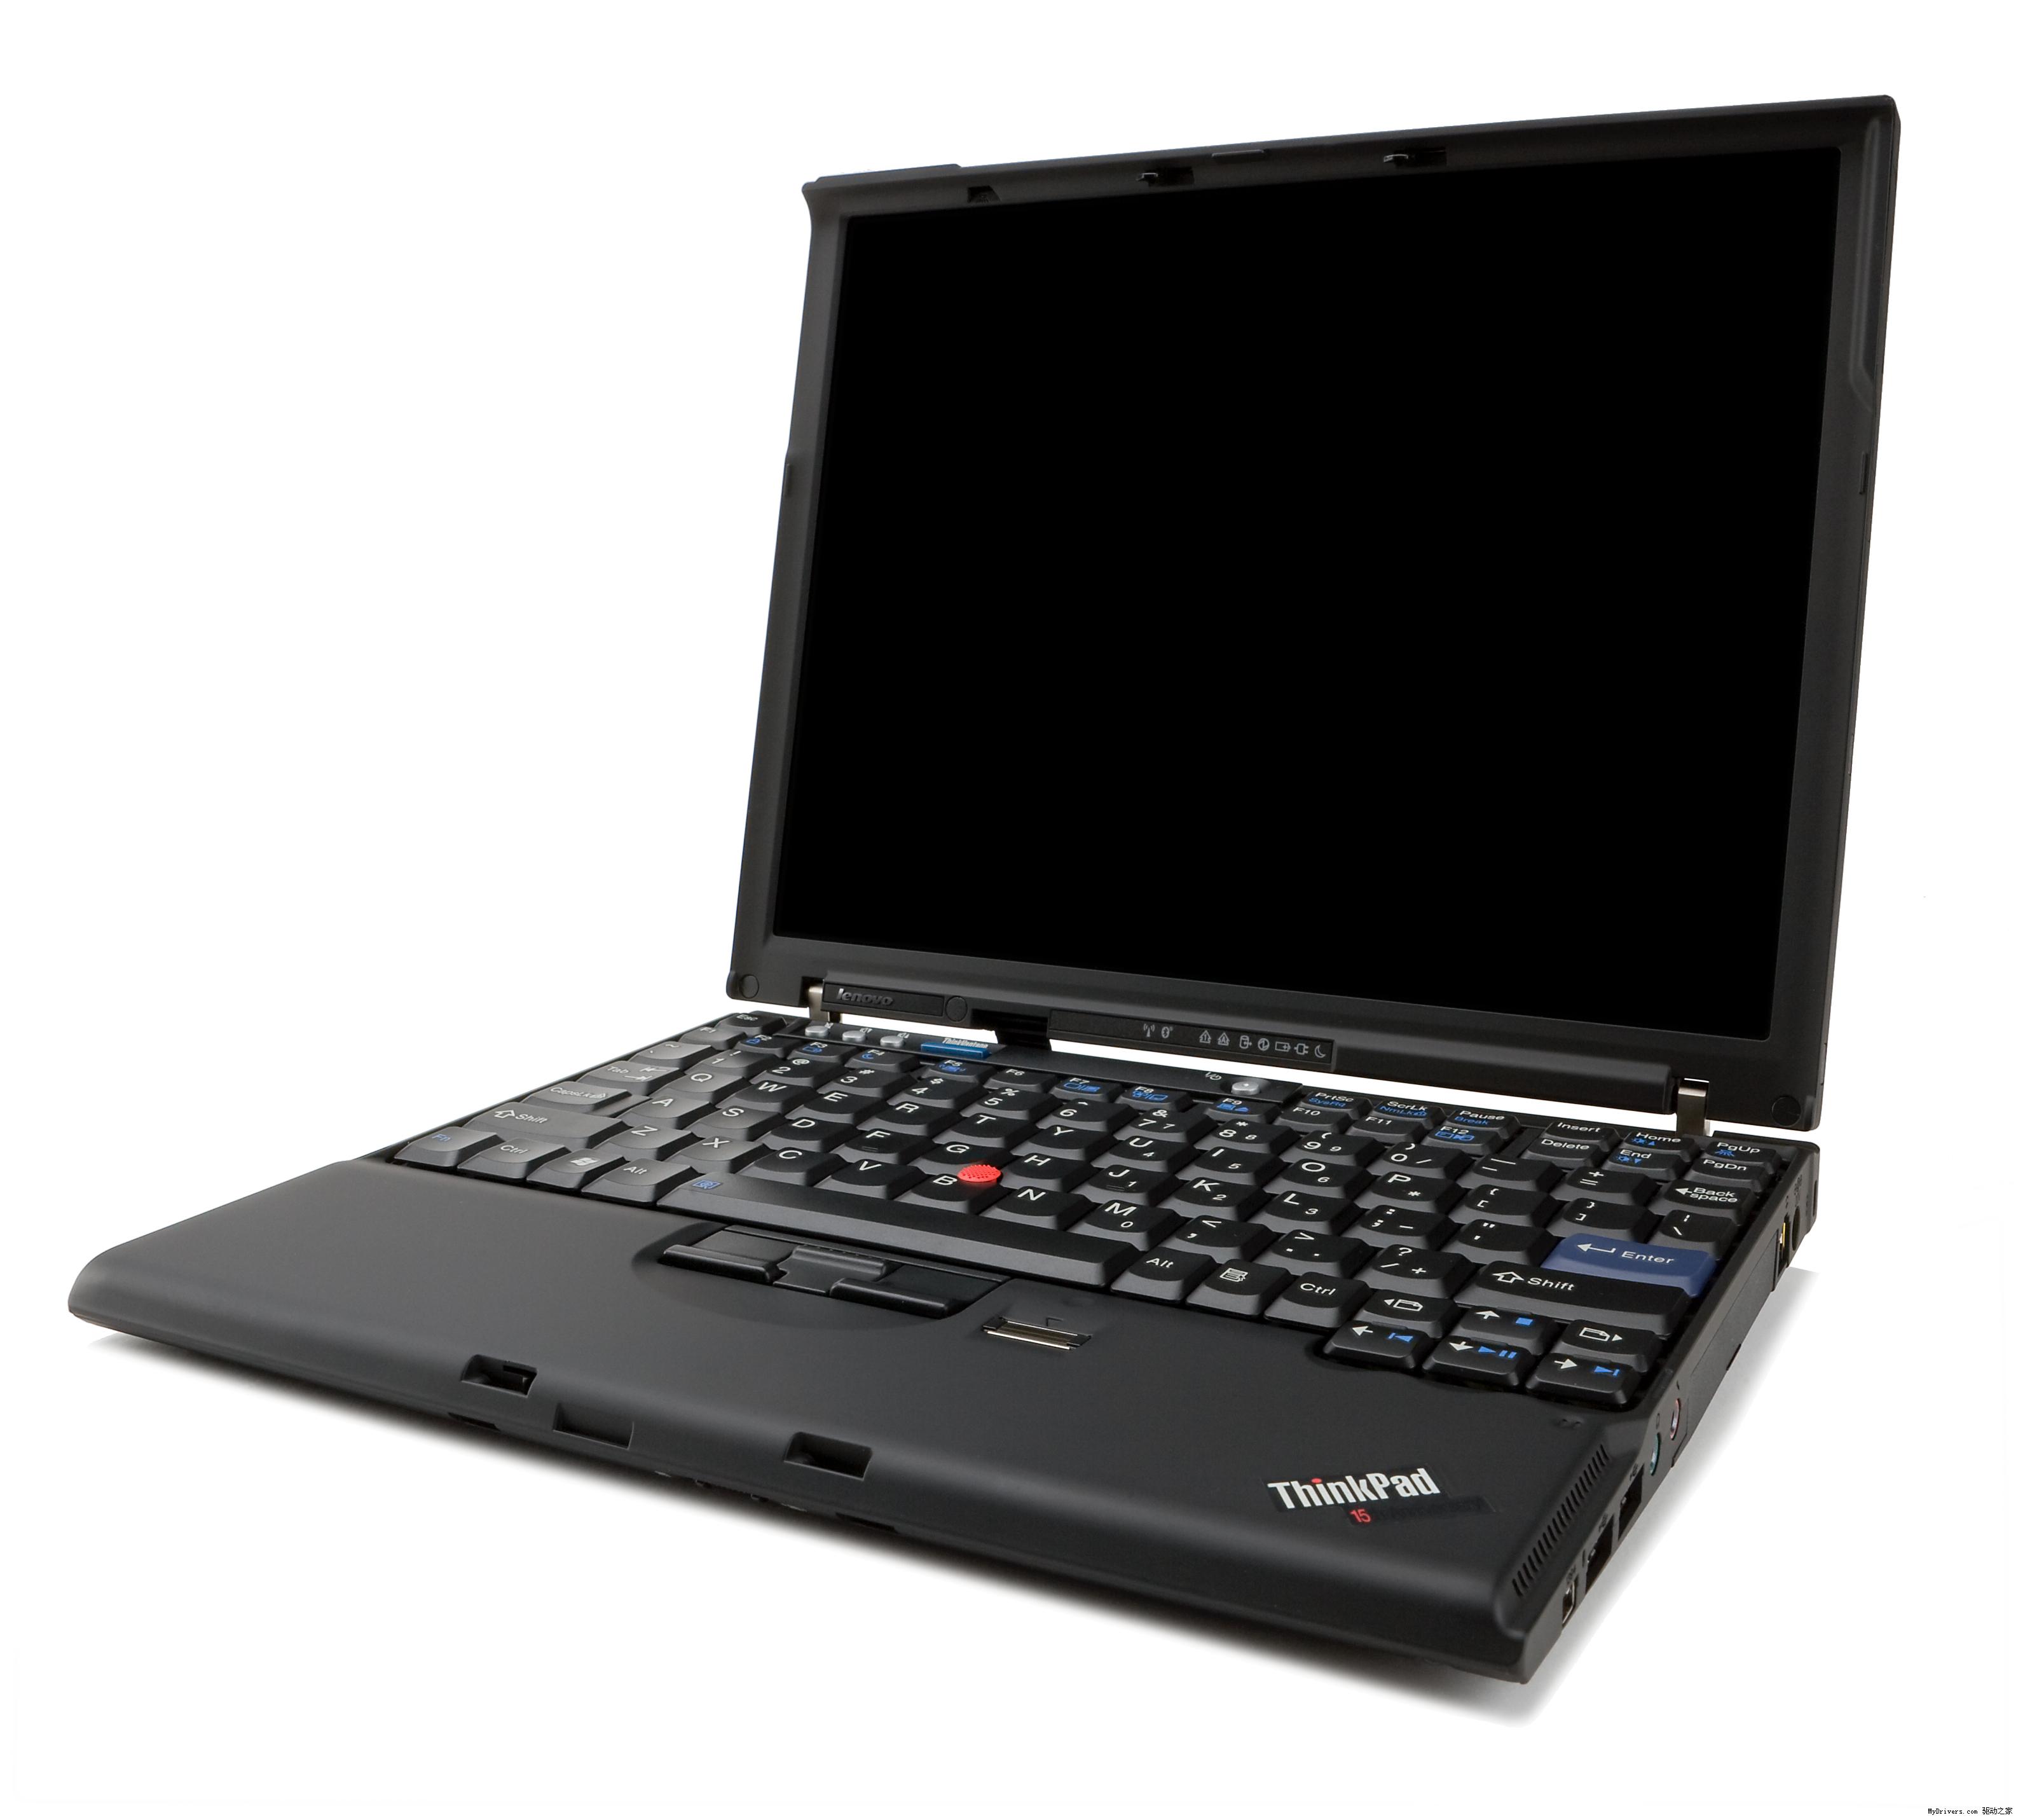 二手笔记本电脑联想Thinkpad x201 超薄IBM12寸宽 双核轻便手提本